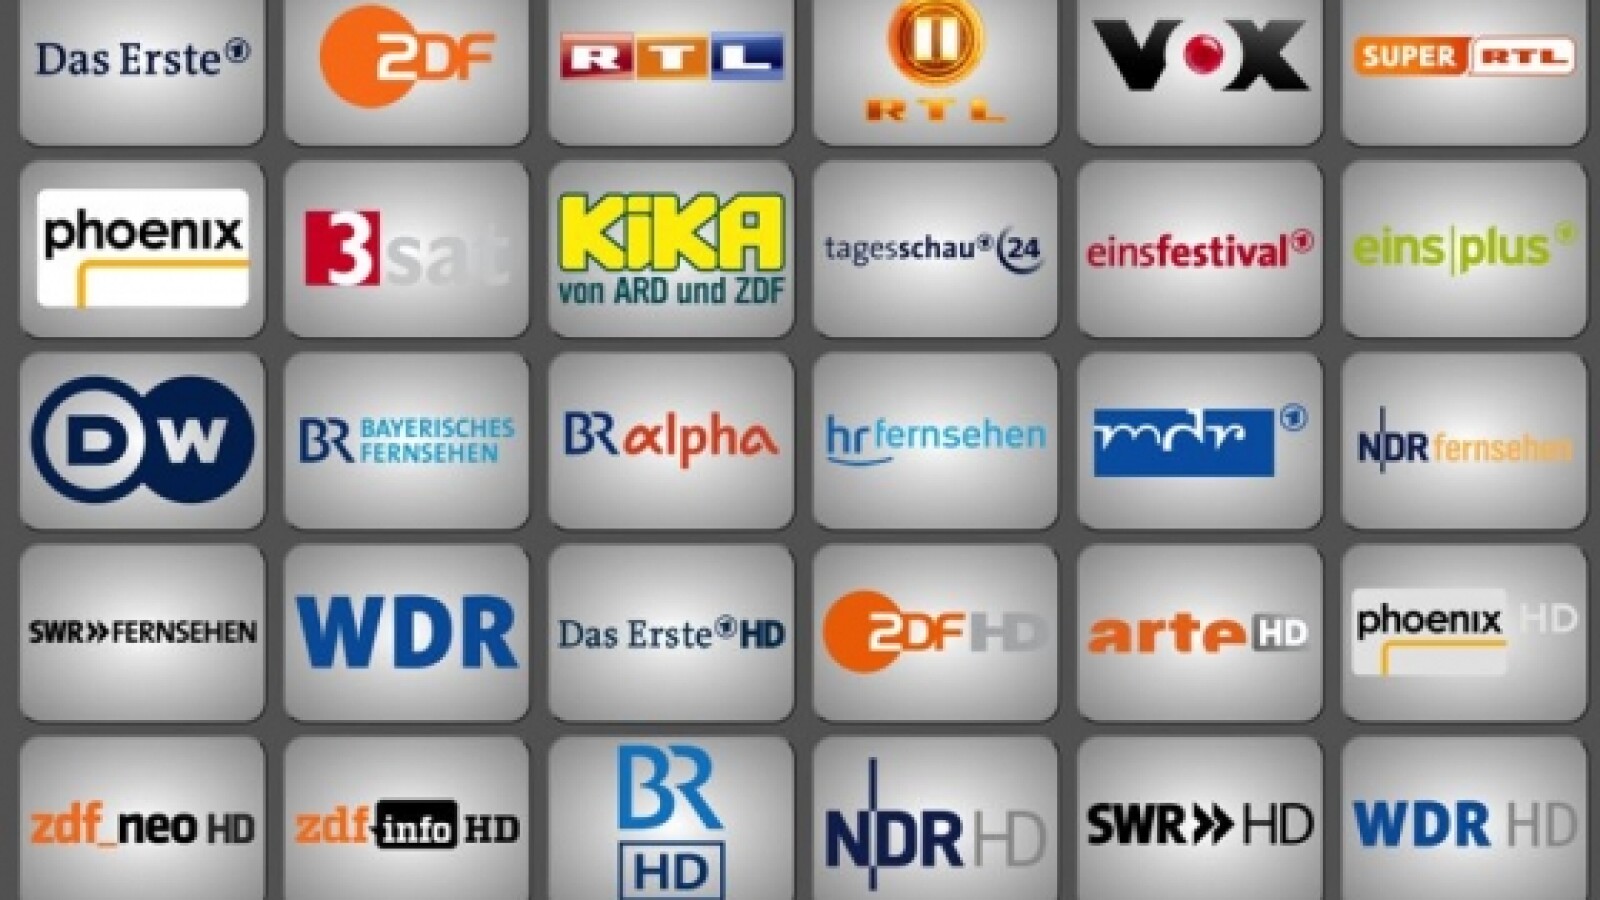 Anleitung Live-TV mit Fritz!Box und FritzOS 6.0 NETZWELT